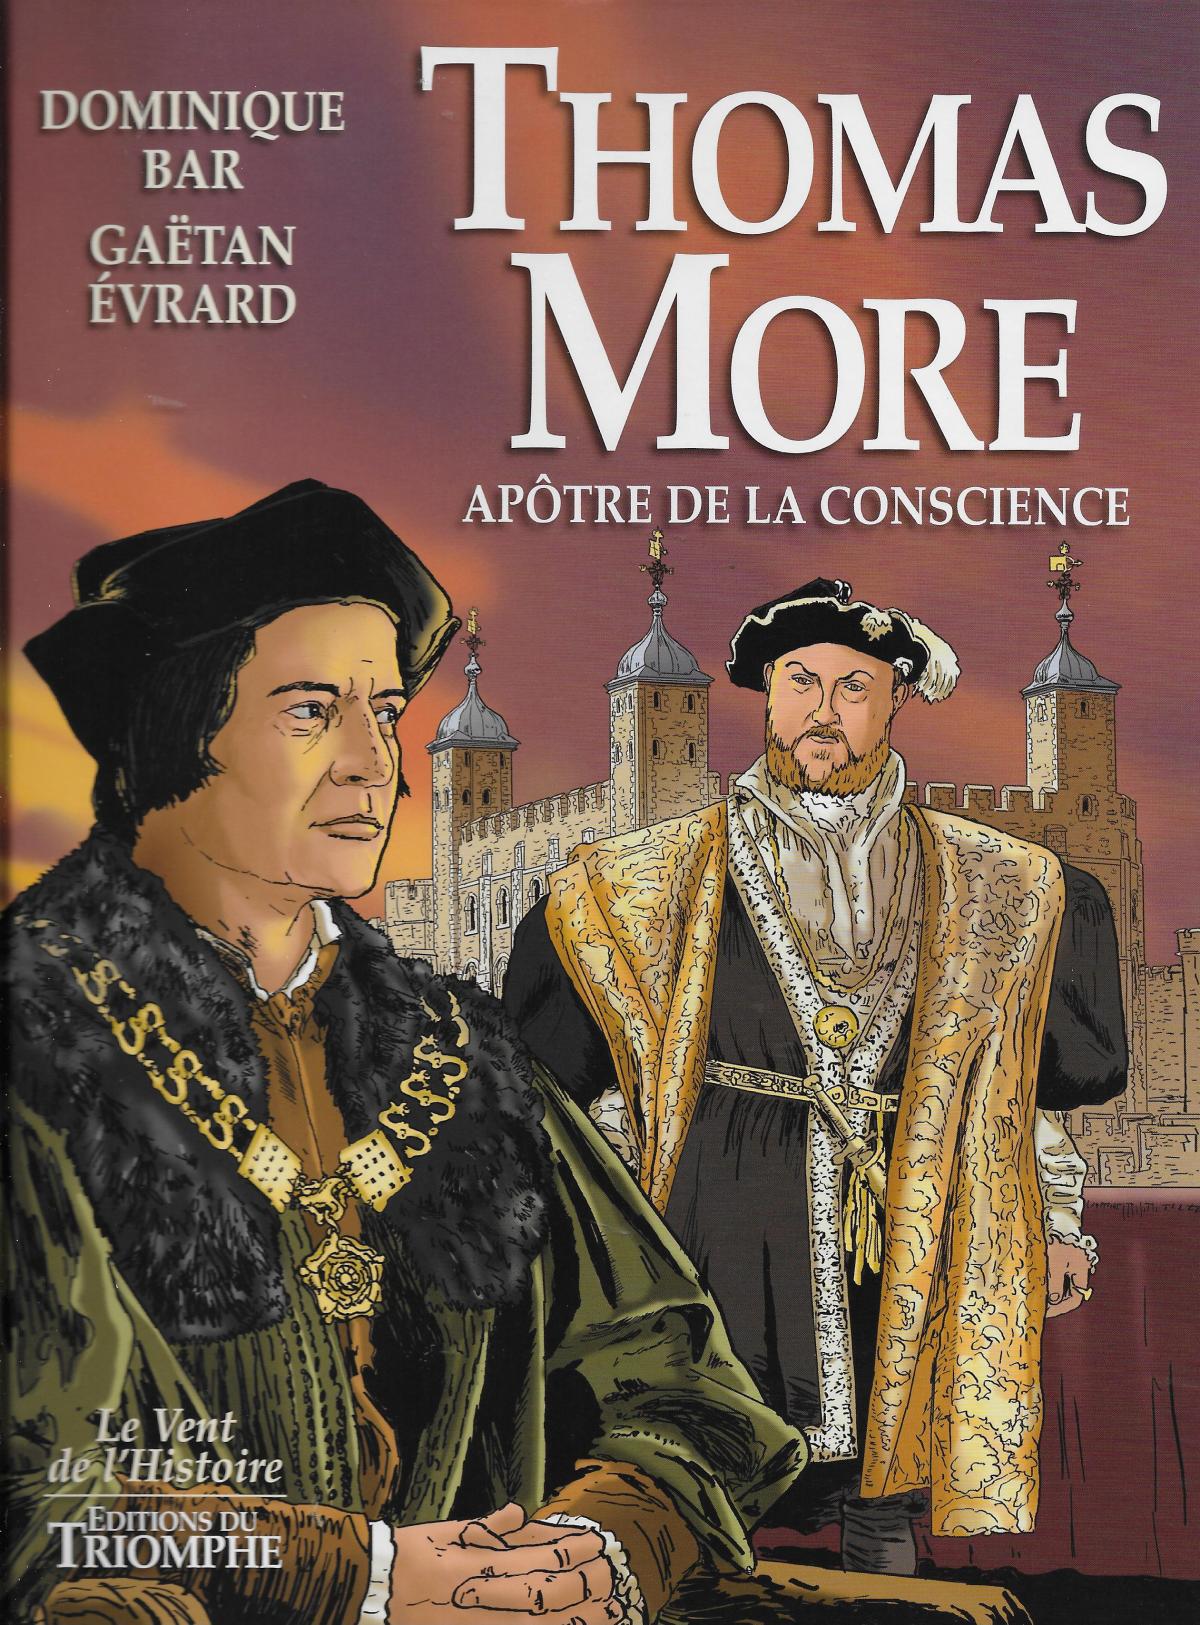 Avec Thomas More, Apôtre de la conscience